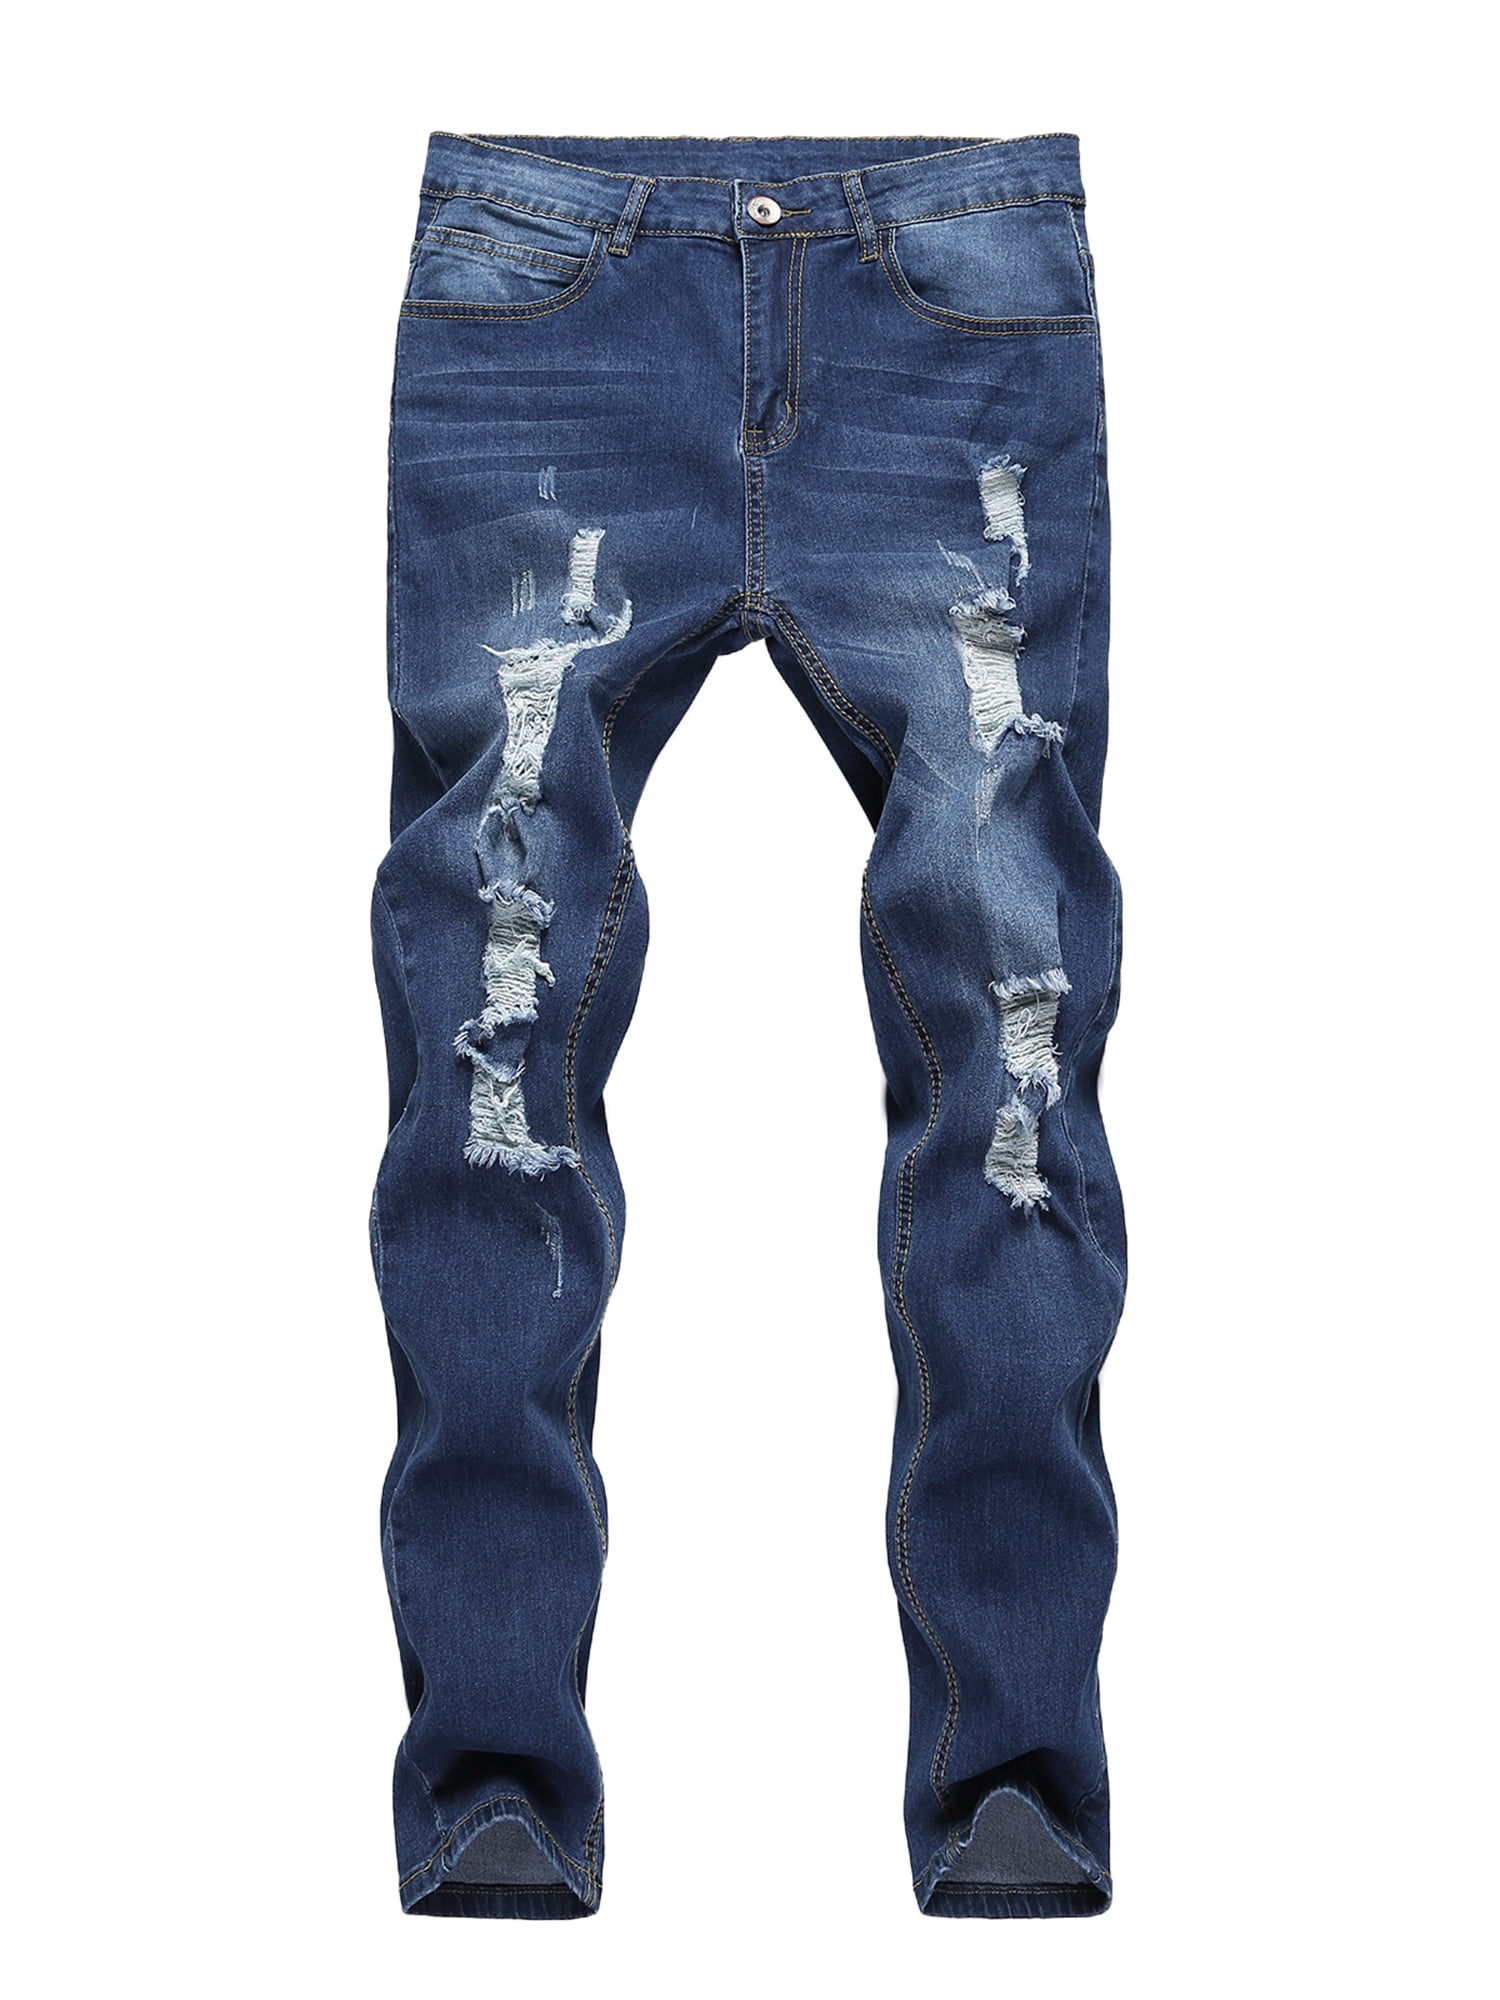 JINSIJU Men Slim Fit Ripped Jeans Fashion Wild Denim Pants Spring ...